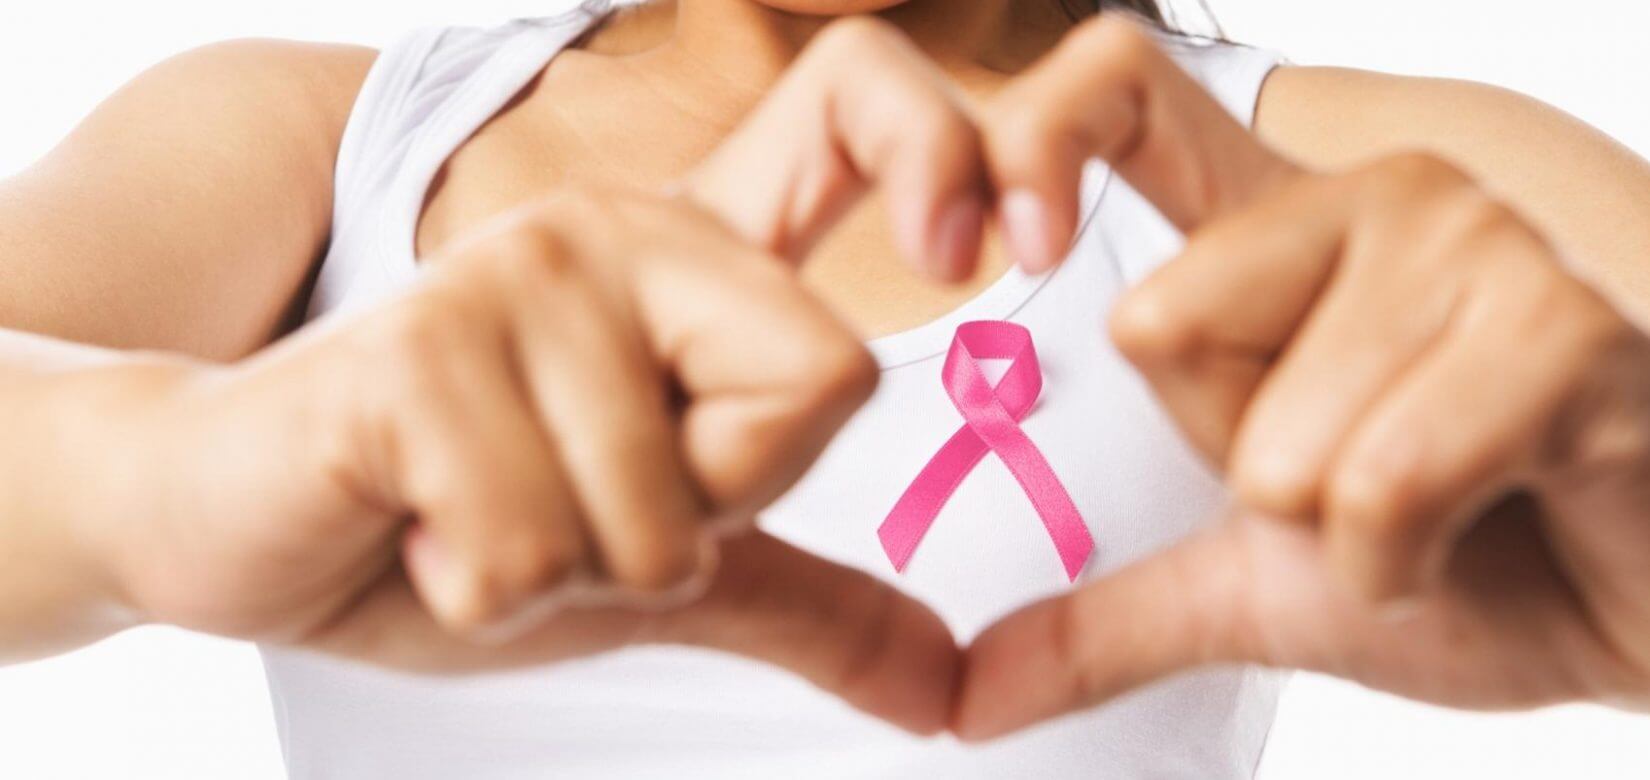 Δωρεάν ψηφιακή μαστογραφία για 1,3 εκατ. γυναίκες με το πρόγραμμα «Φώφη Γεννηματά»